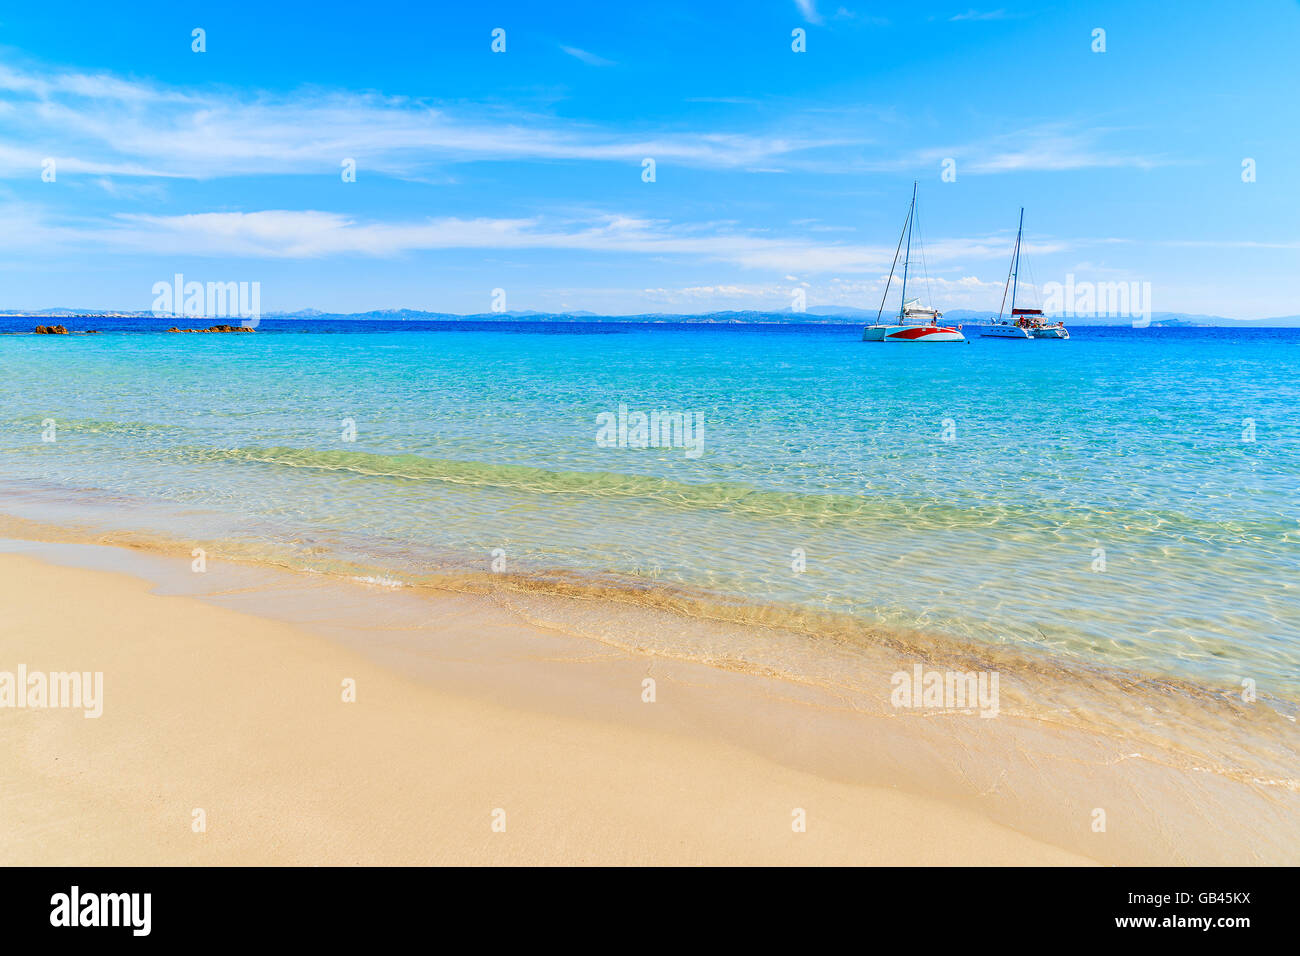 Ein Blick auf Grande Sperone Traumstrand mit kristallklarem blauen Meer Wasser und Katamaran-Boote in Ferne, Korsika, Franken Stockfoto